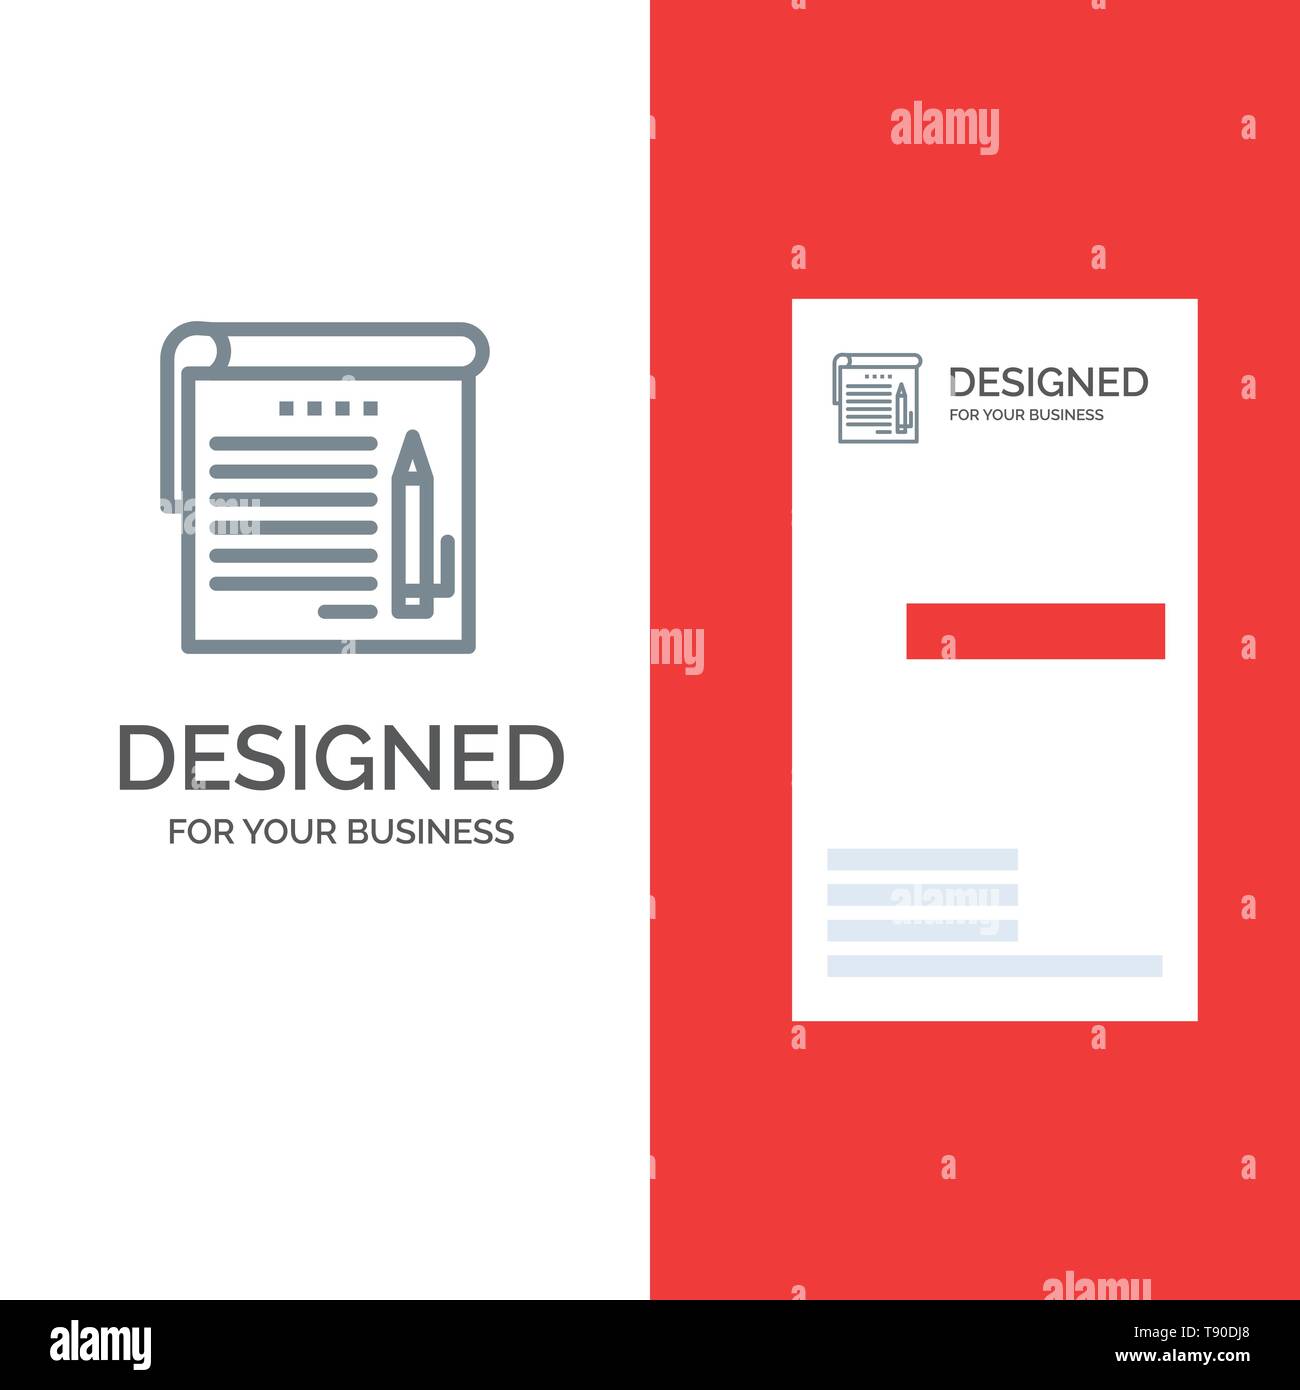 Student, Notizen, Notiz, Bildung Grau Logo Design und Business For Student Information Card Template